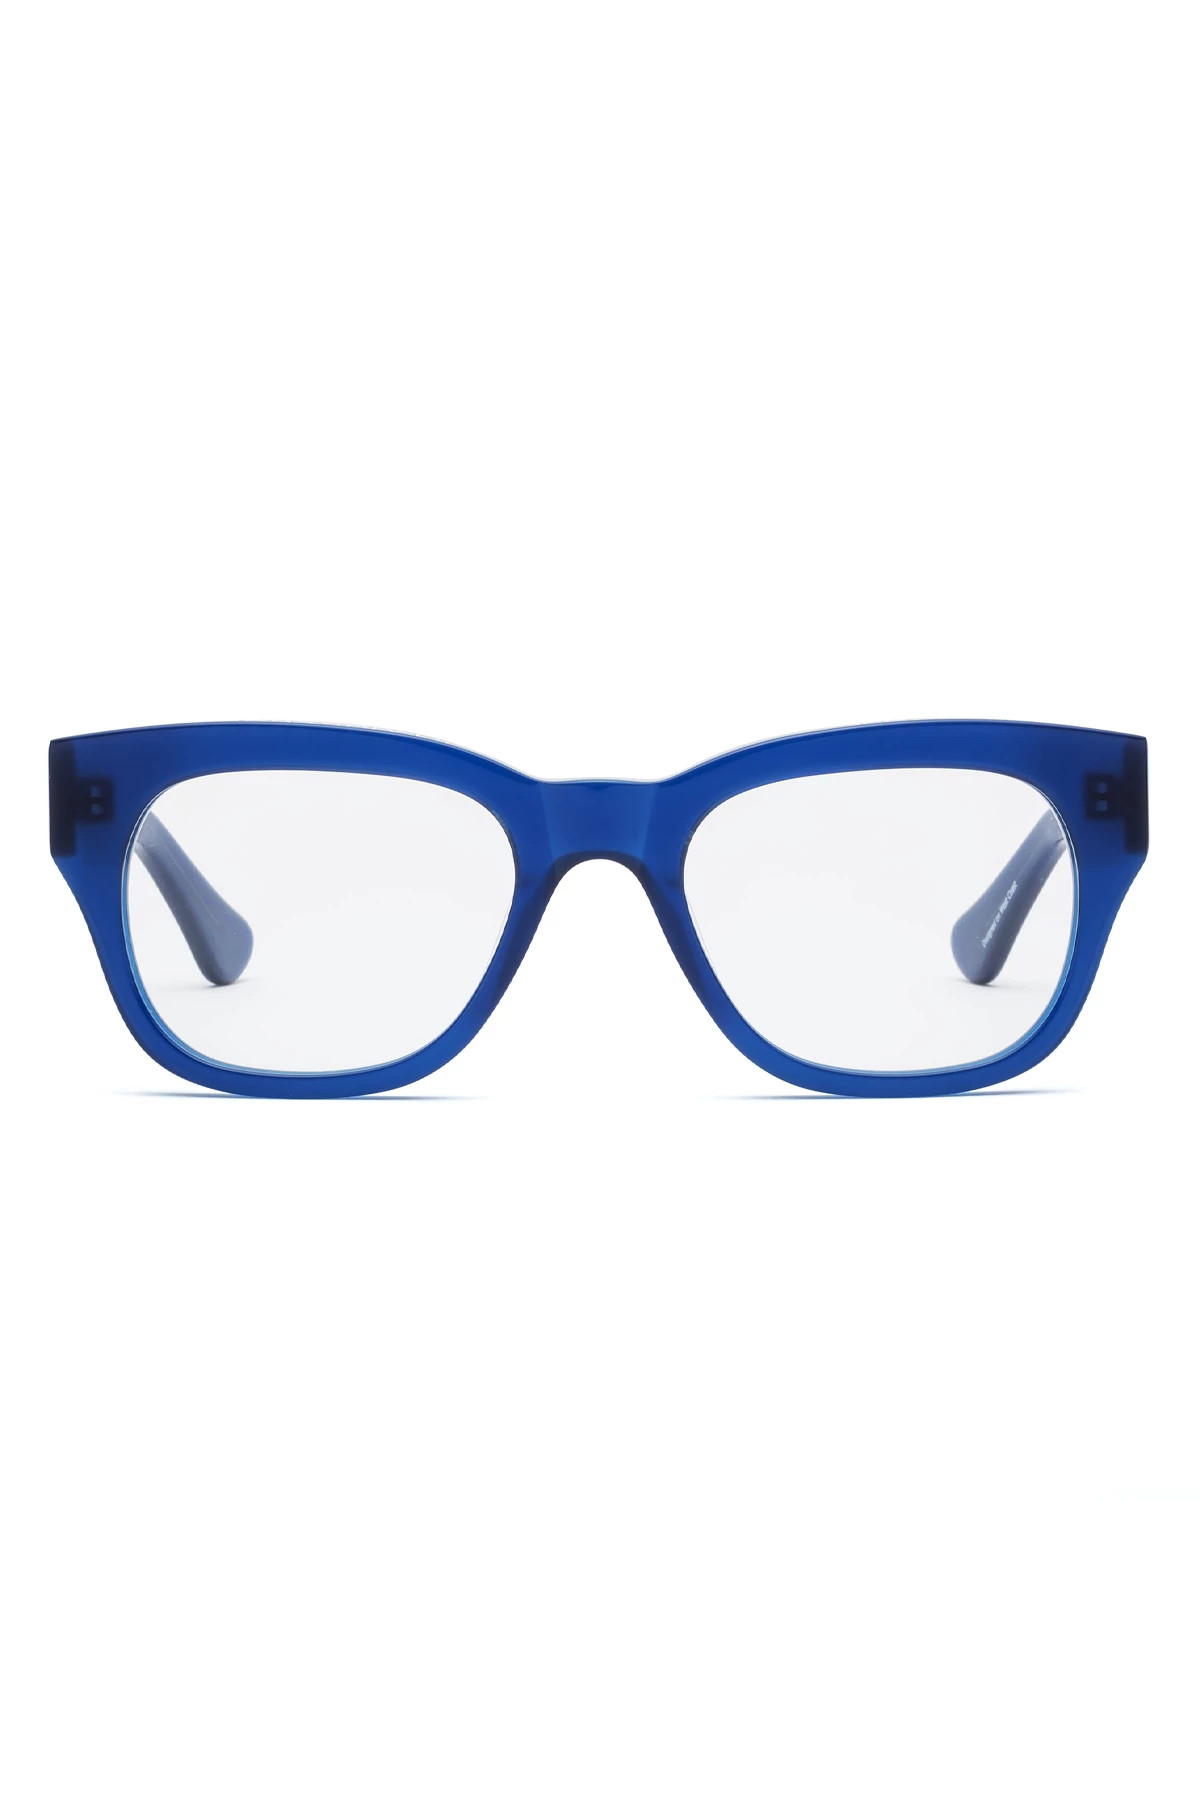 Miklos Blue Light Filter Glasses image number 2